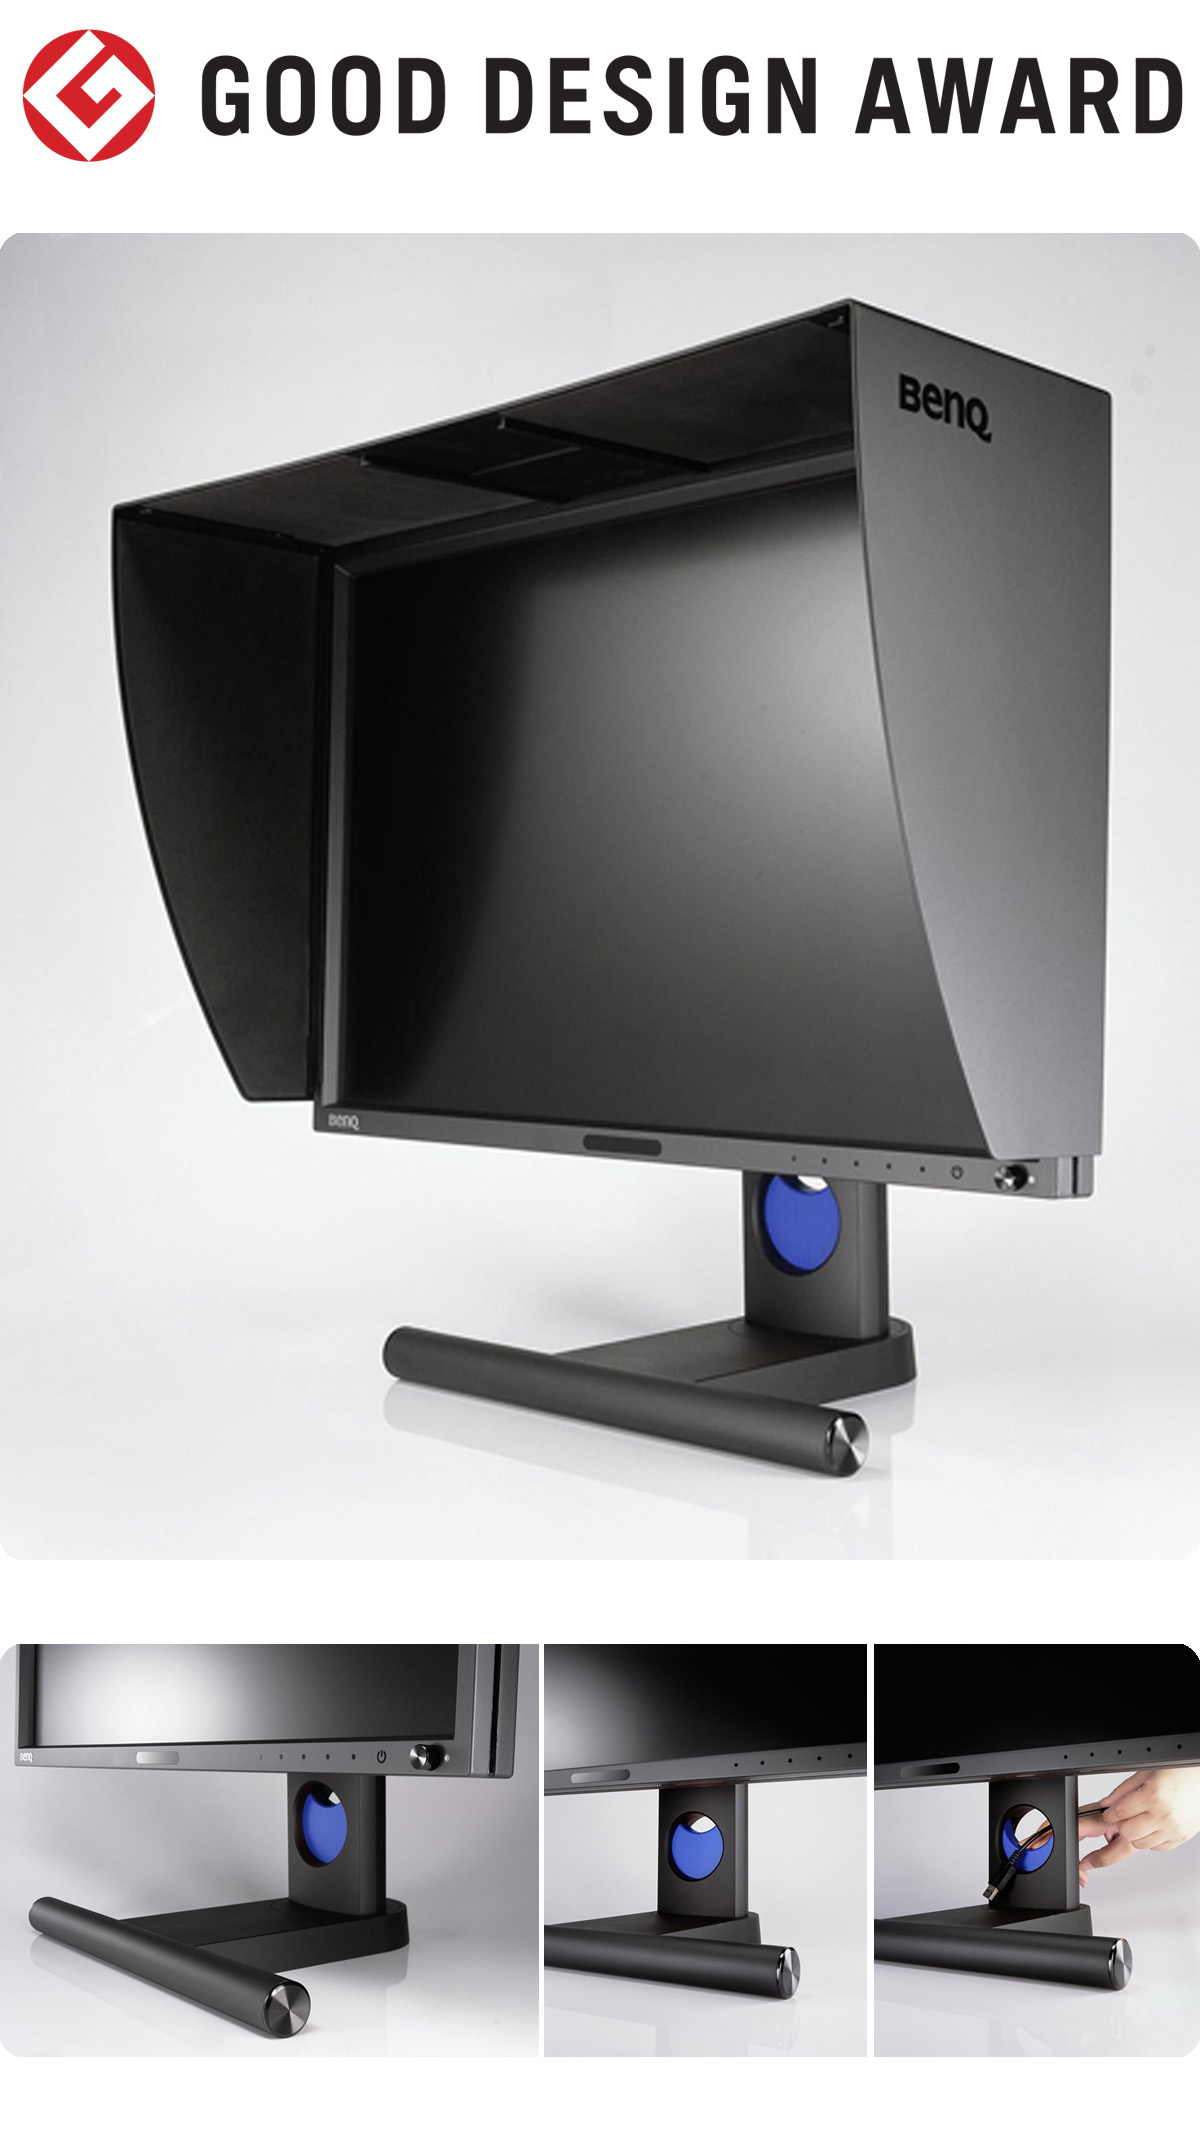 【日本】明基BenQ PG系列专业显示器获颁2012年度G-Mark设计大奖（GOOD DESIGN AWARD 2012）